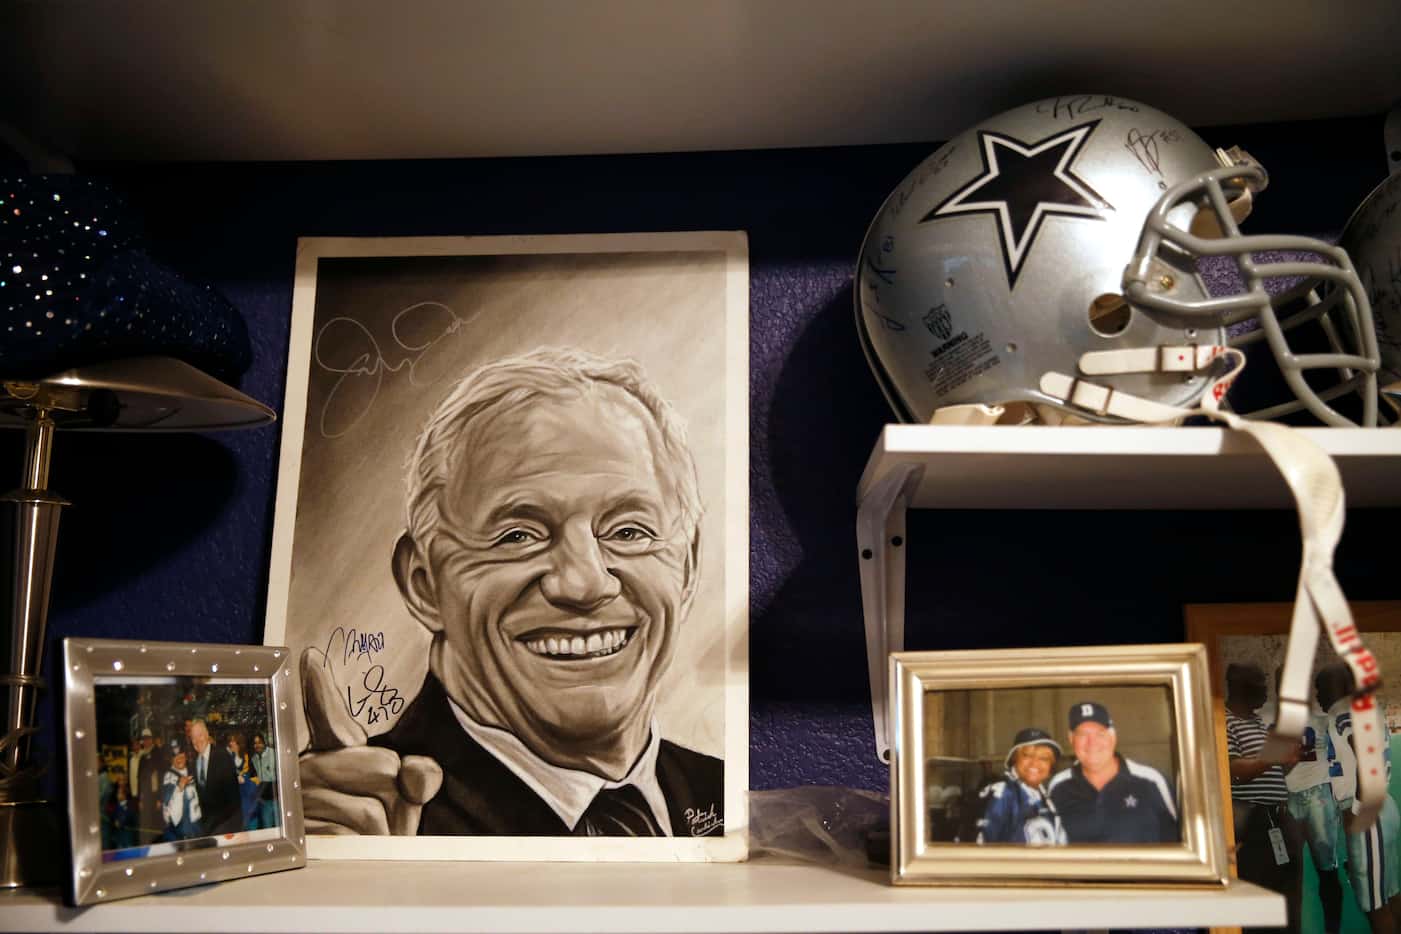 Jerry Jones artistic rendering and Dallas Cowboys memorabilia in a room at Dallas Cowboys...